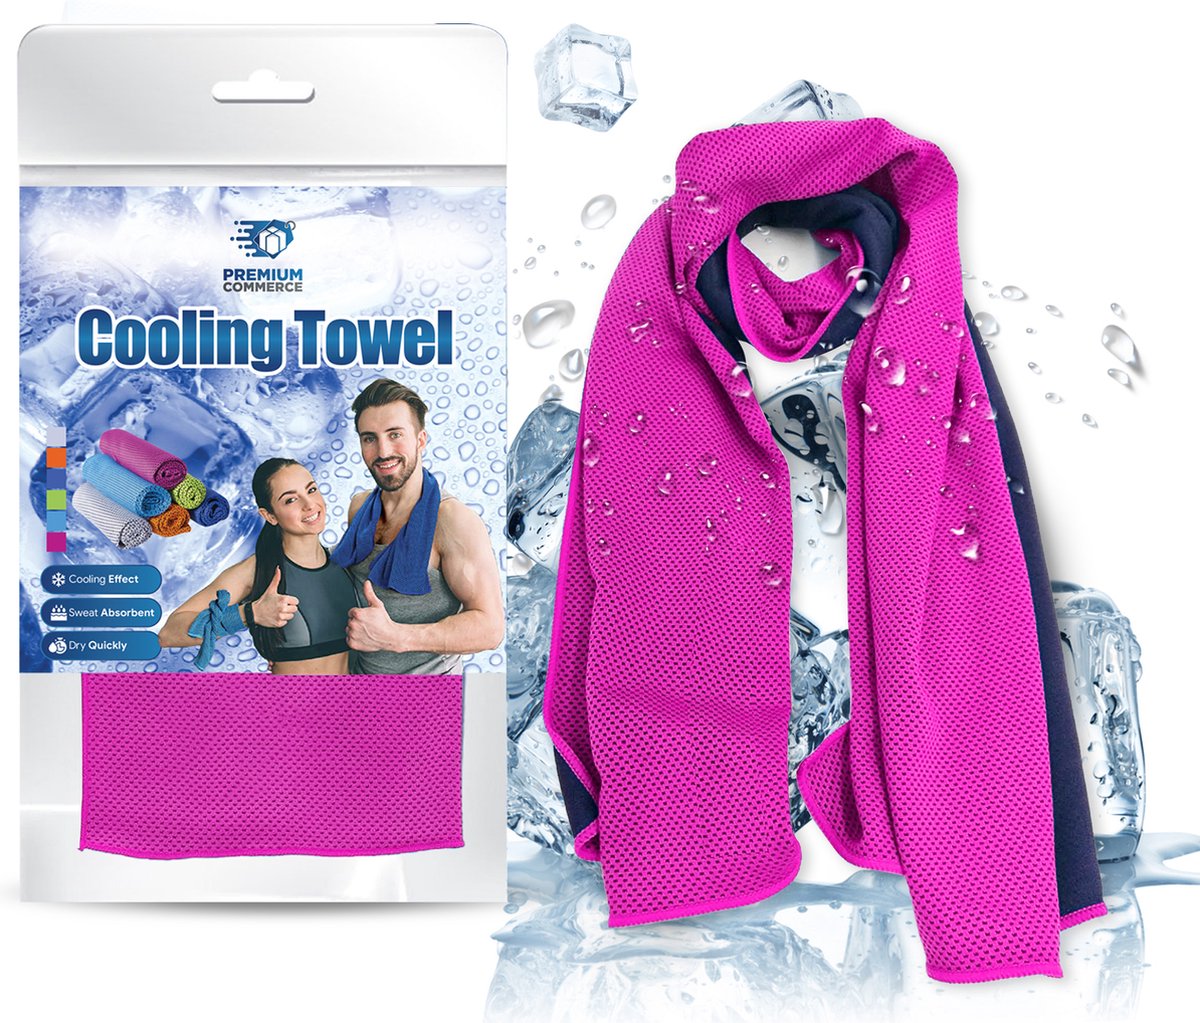 Verkoelende Handdoek - Koel - Cooling Towel - Sport - Fitness - ijshanddoek - Roze